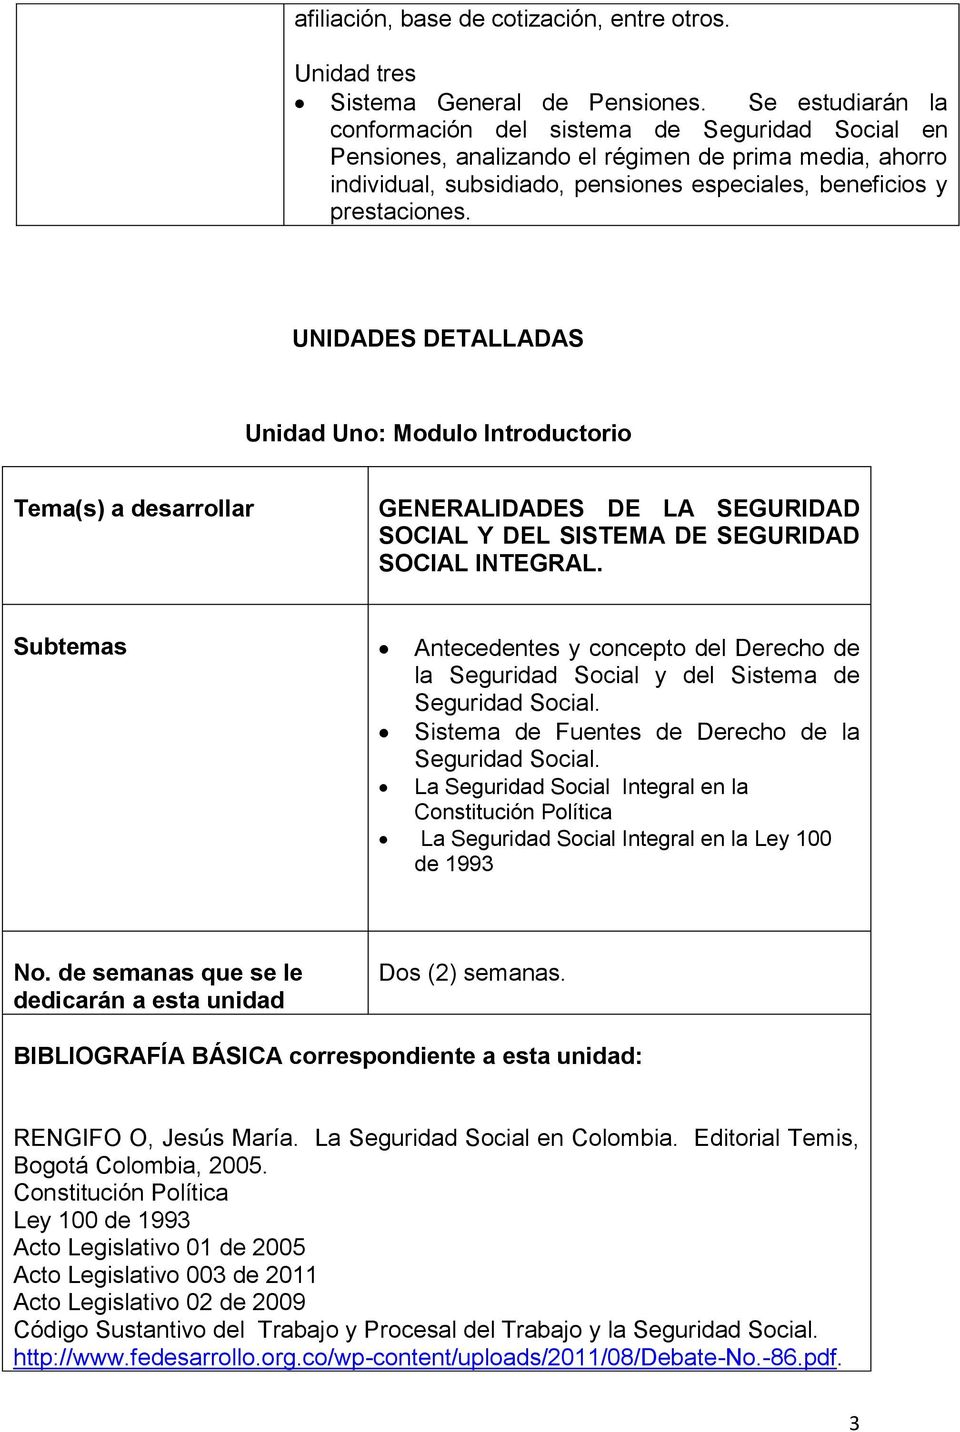 UNIDADES DETALLADAS Unidad Uno: Modulo Introductorio Tema(s) a desarrollar GENERALIDADES DE LA SEGURIDAD SOCIAL Y DEL SISTEMA DE SEGURIDAD SOCIAL INTEGRAL.